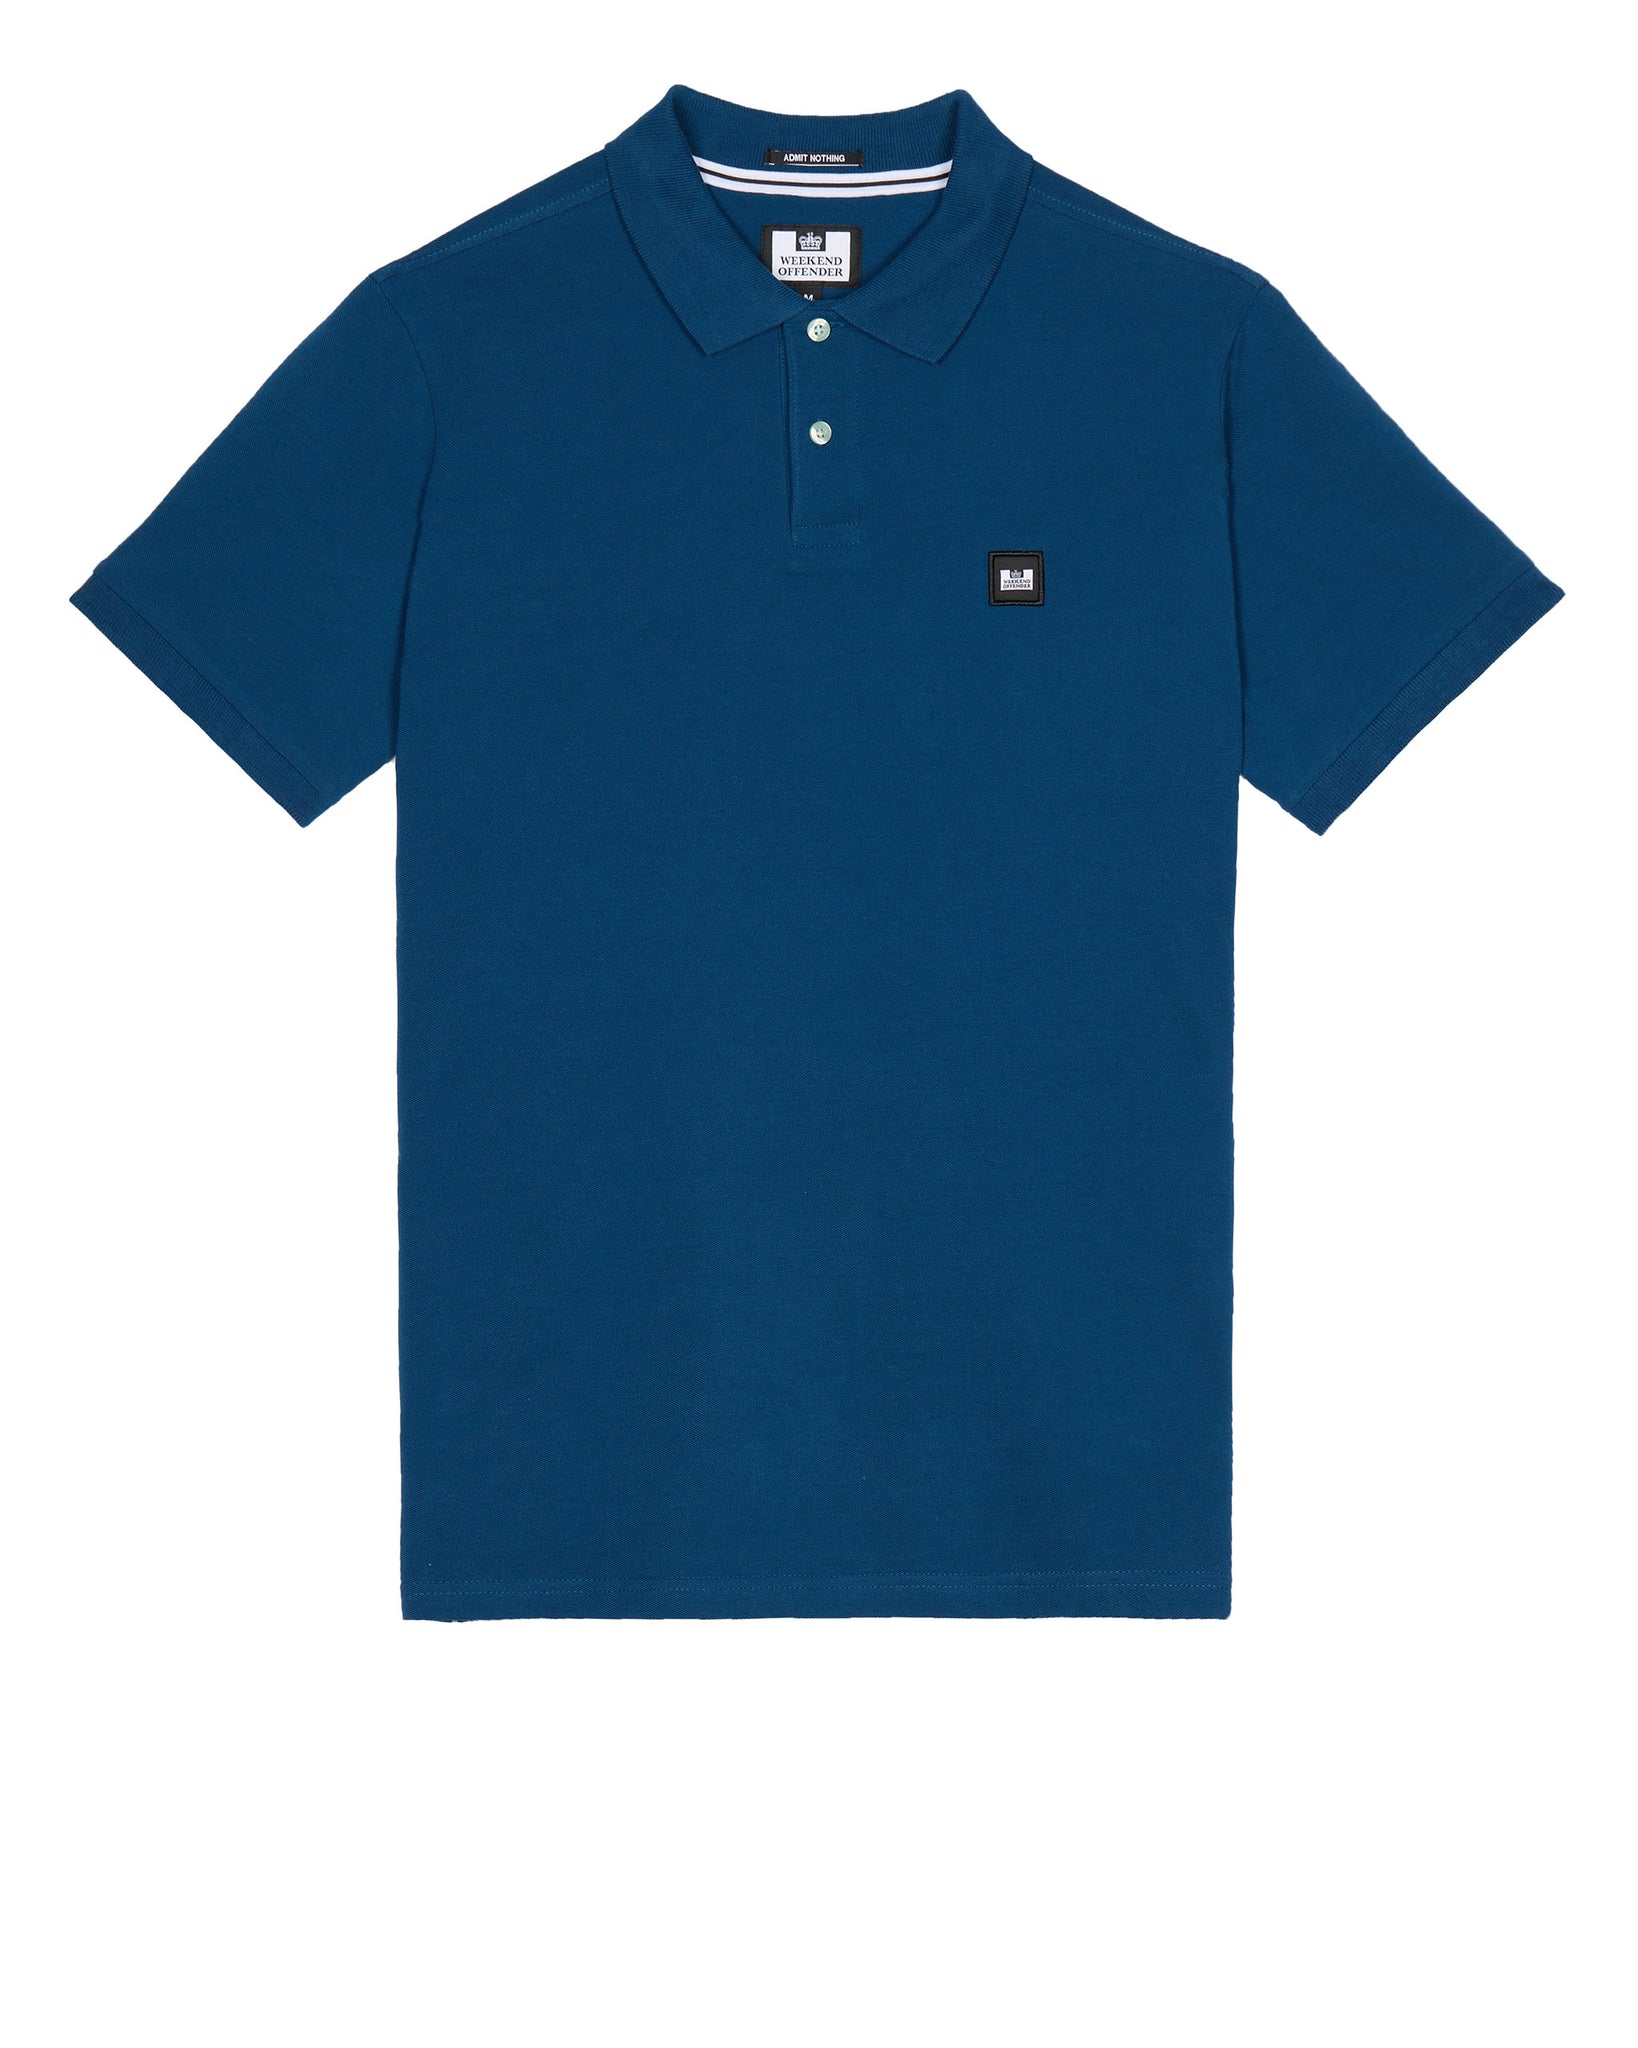 Caneiros Polo Shirt Juniper Blue - Plus Size